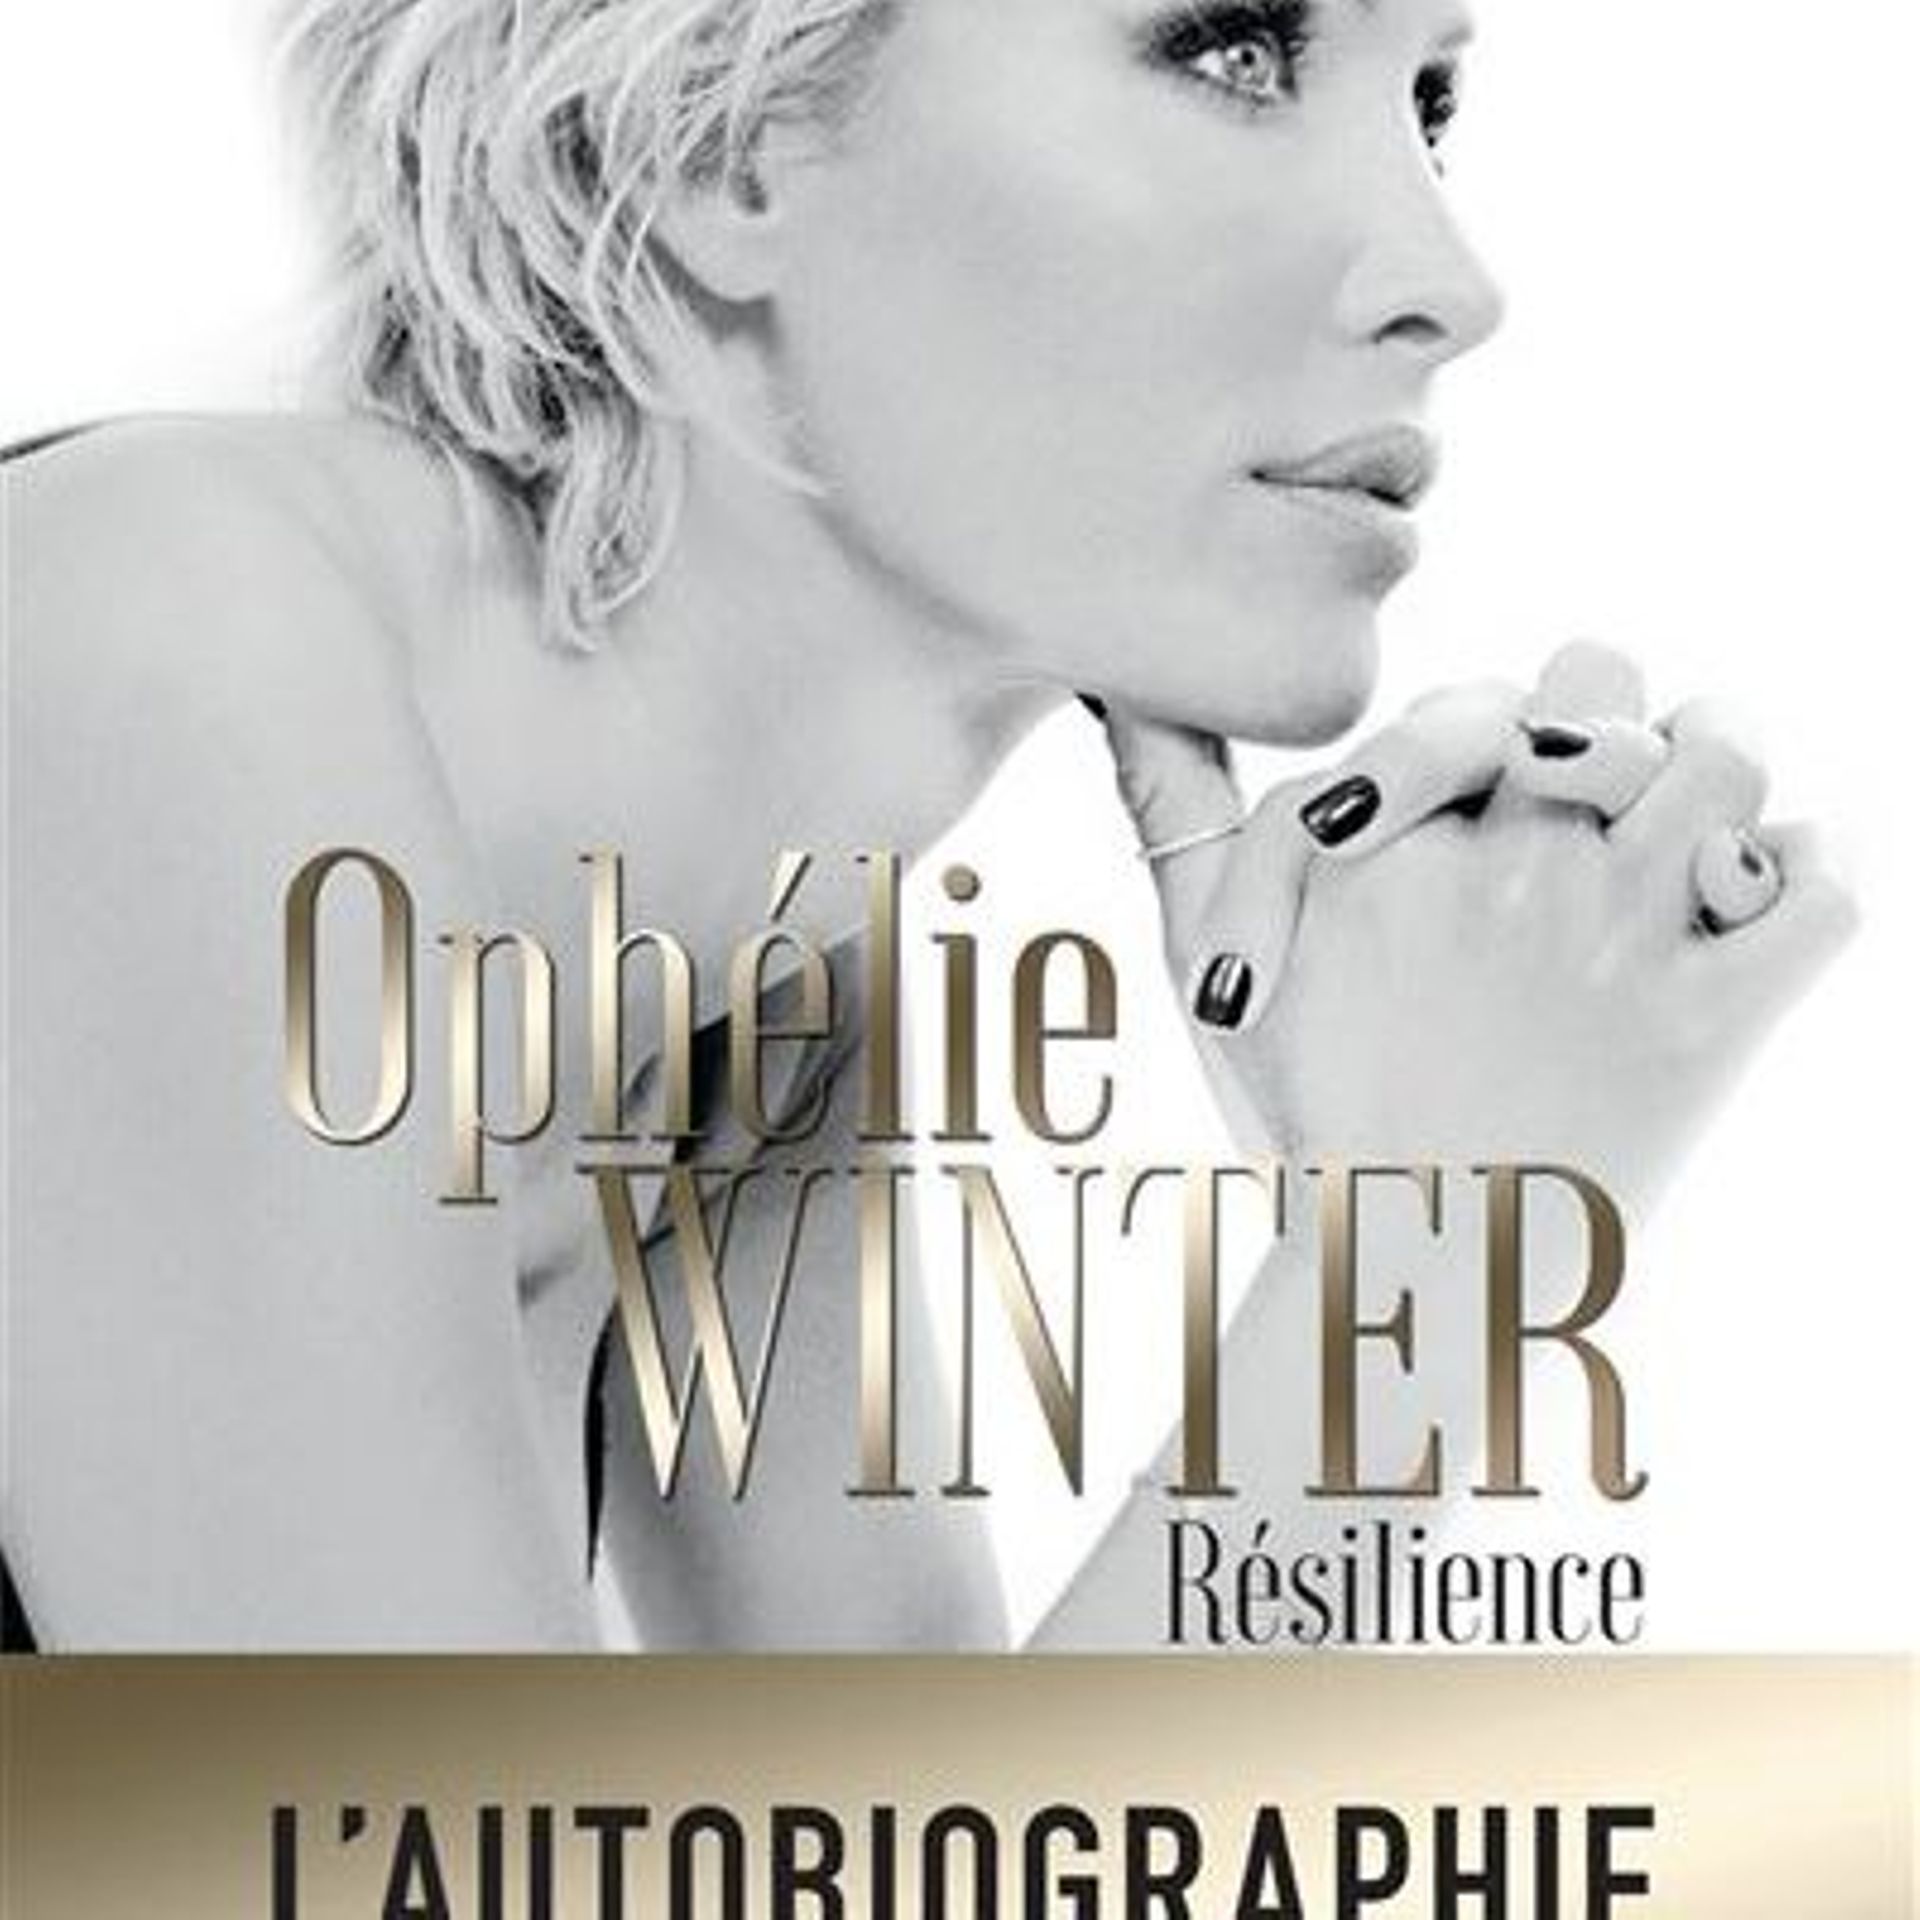 Porn Ophelie Winter - OphÃ©lie Winter raconte les Ã©preuves qu'elle a traversÃ©es - rtbf.be